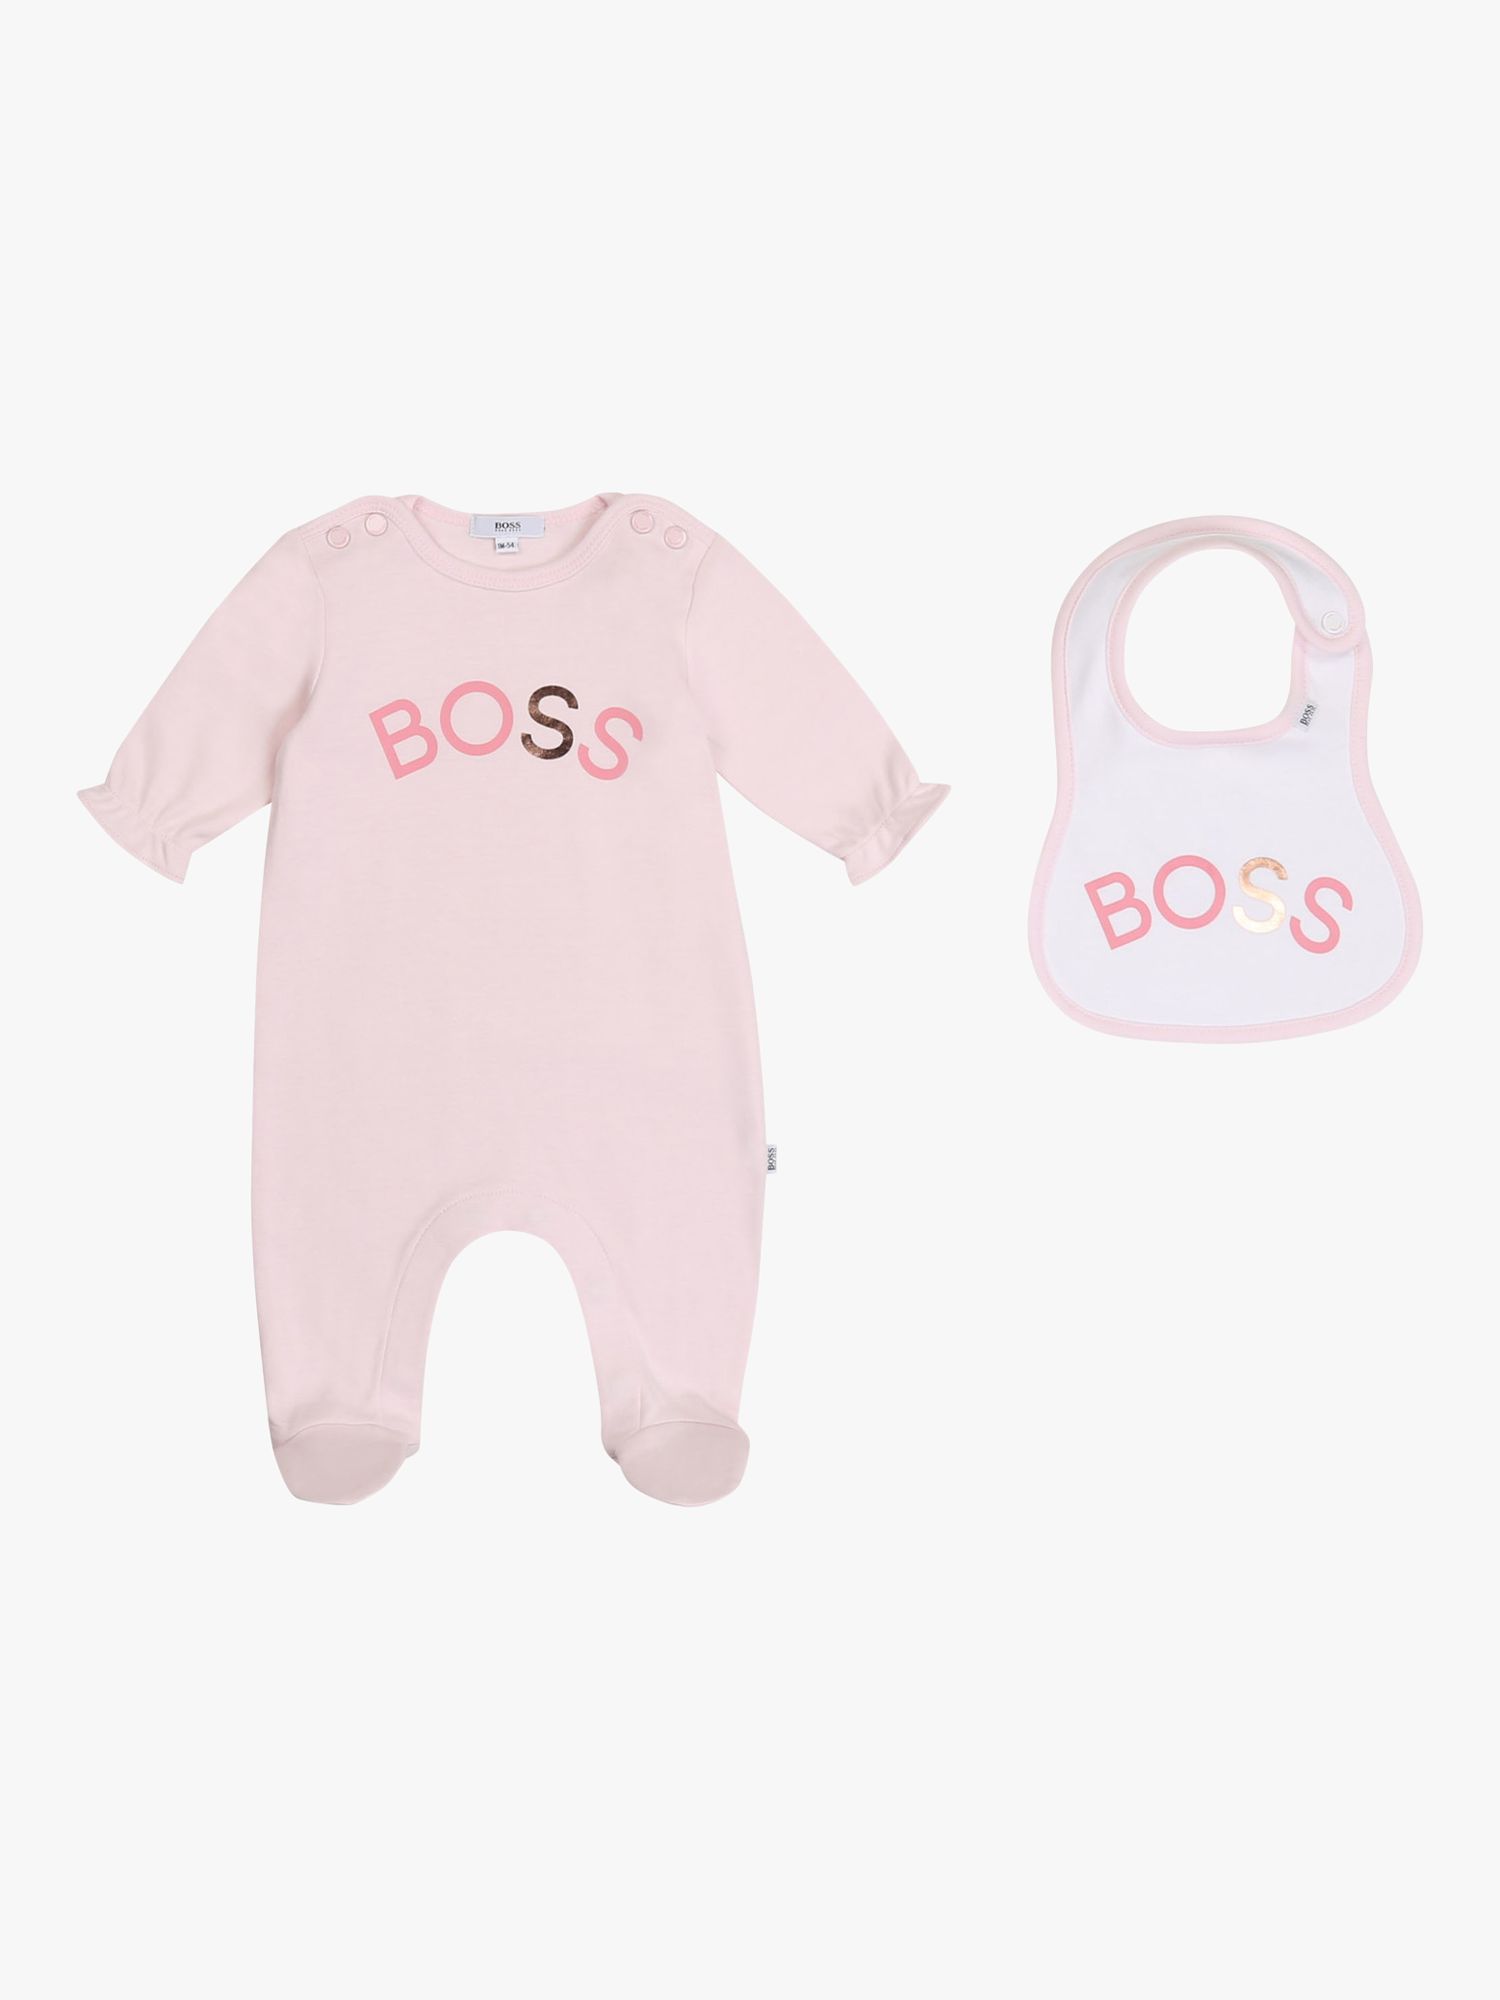 hugo boss baby sleepsuit